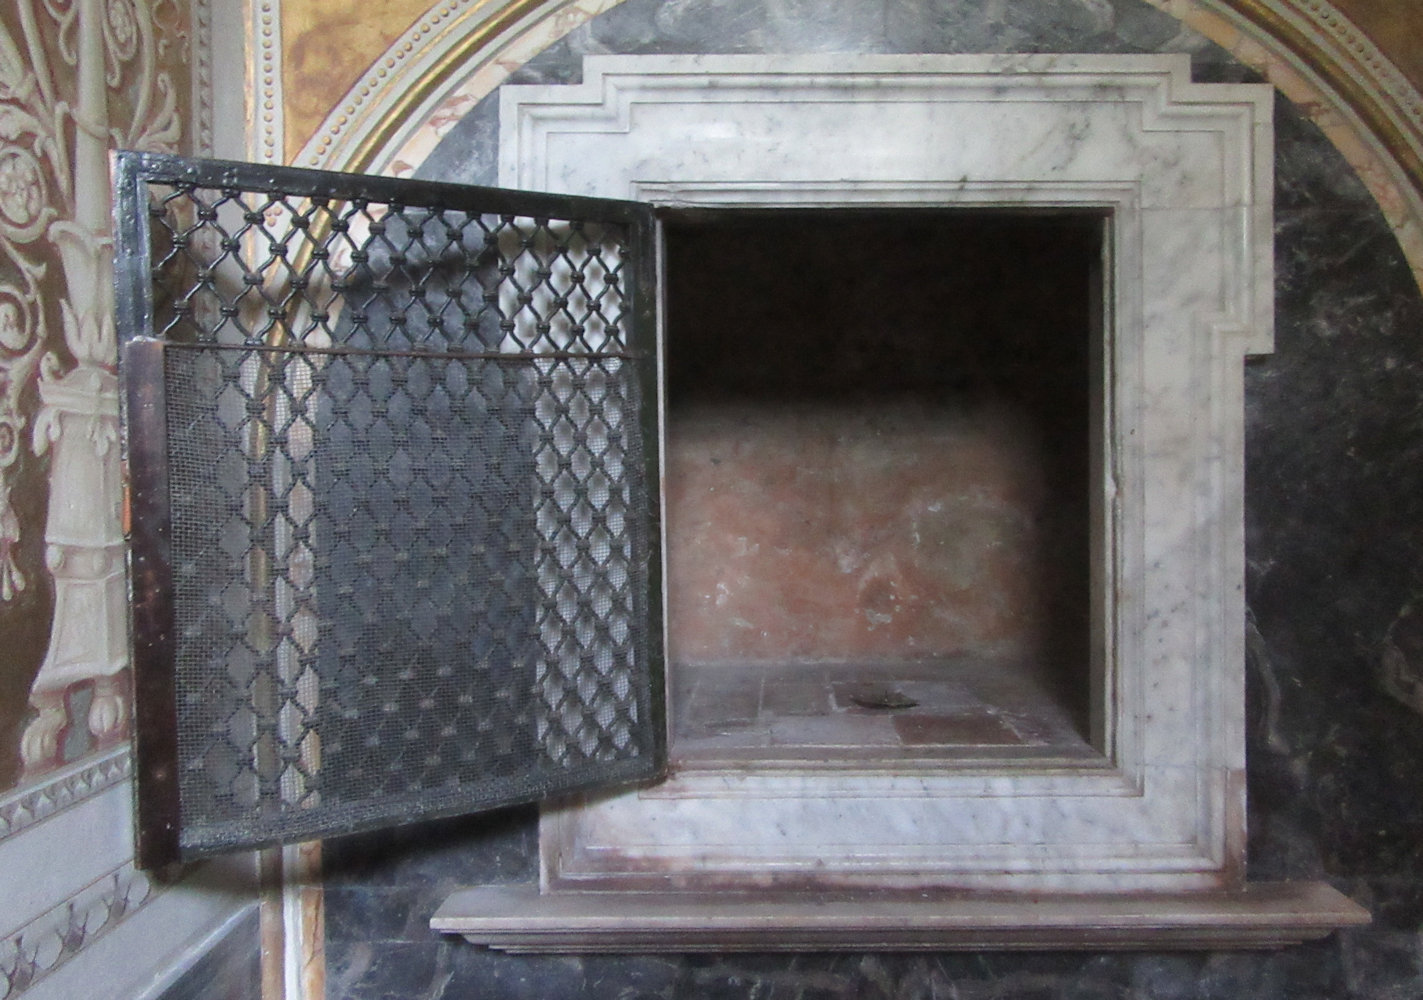 Der Stein, auf dem Gregor schlief, in seiner ehemaligen Klosterzelle neben der Kirche San Gregorio Magno al Celio in Rom